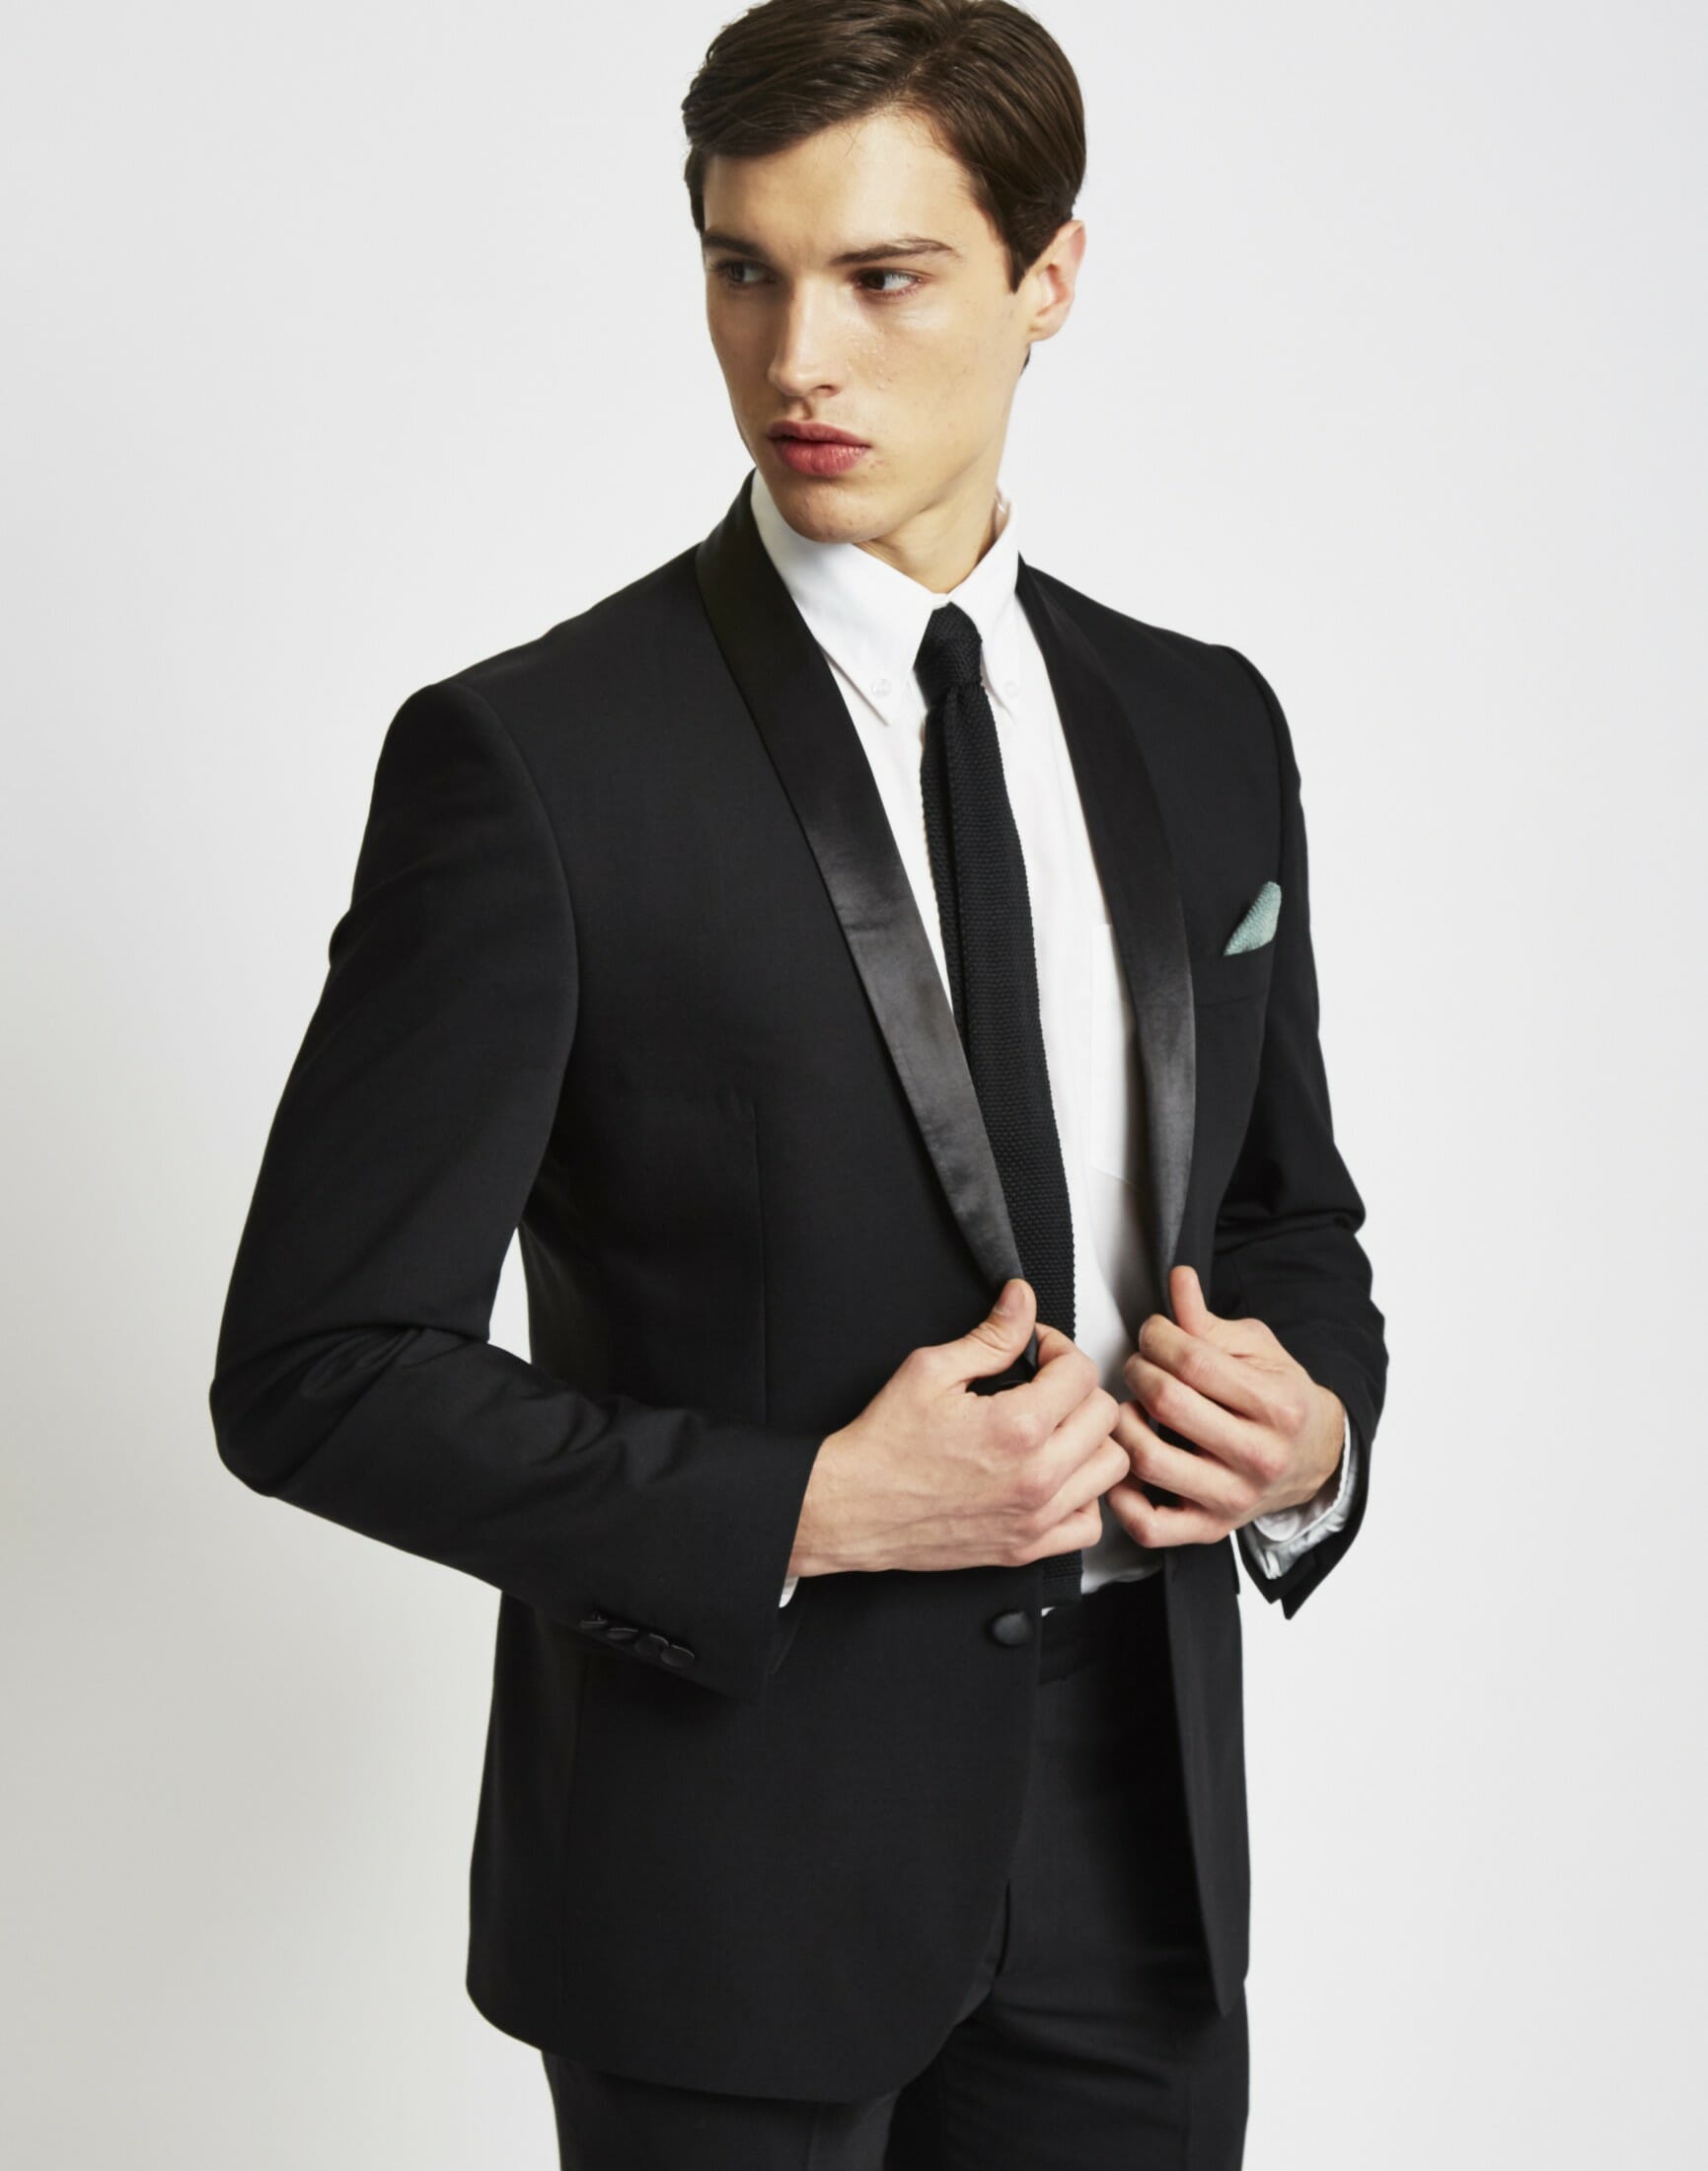 formal all black attire